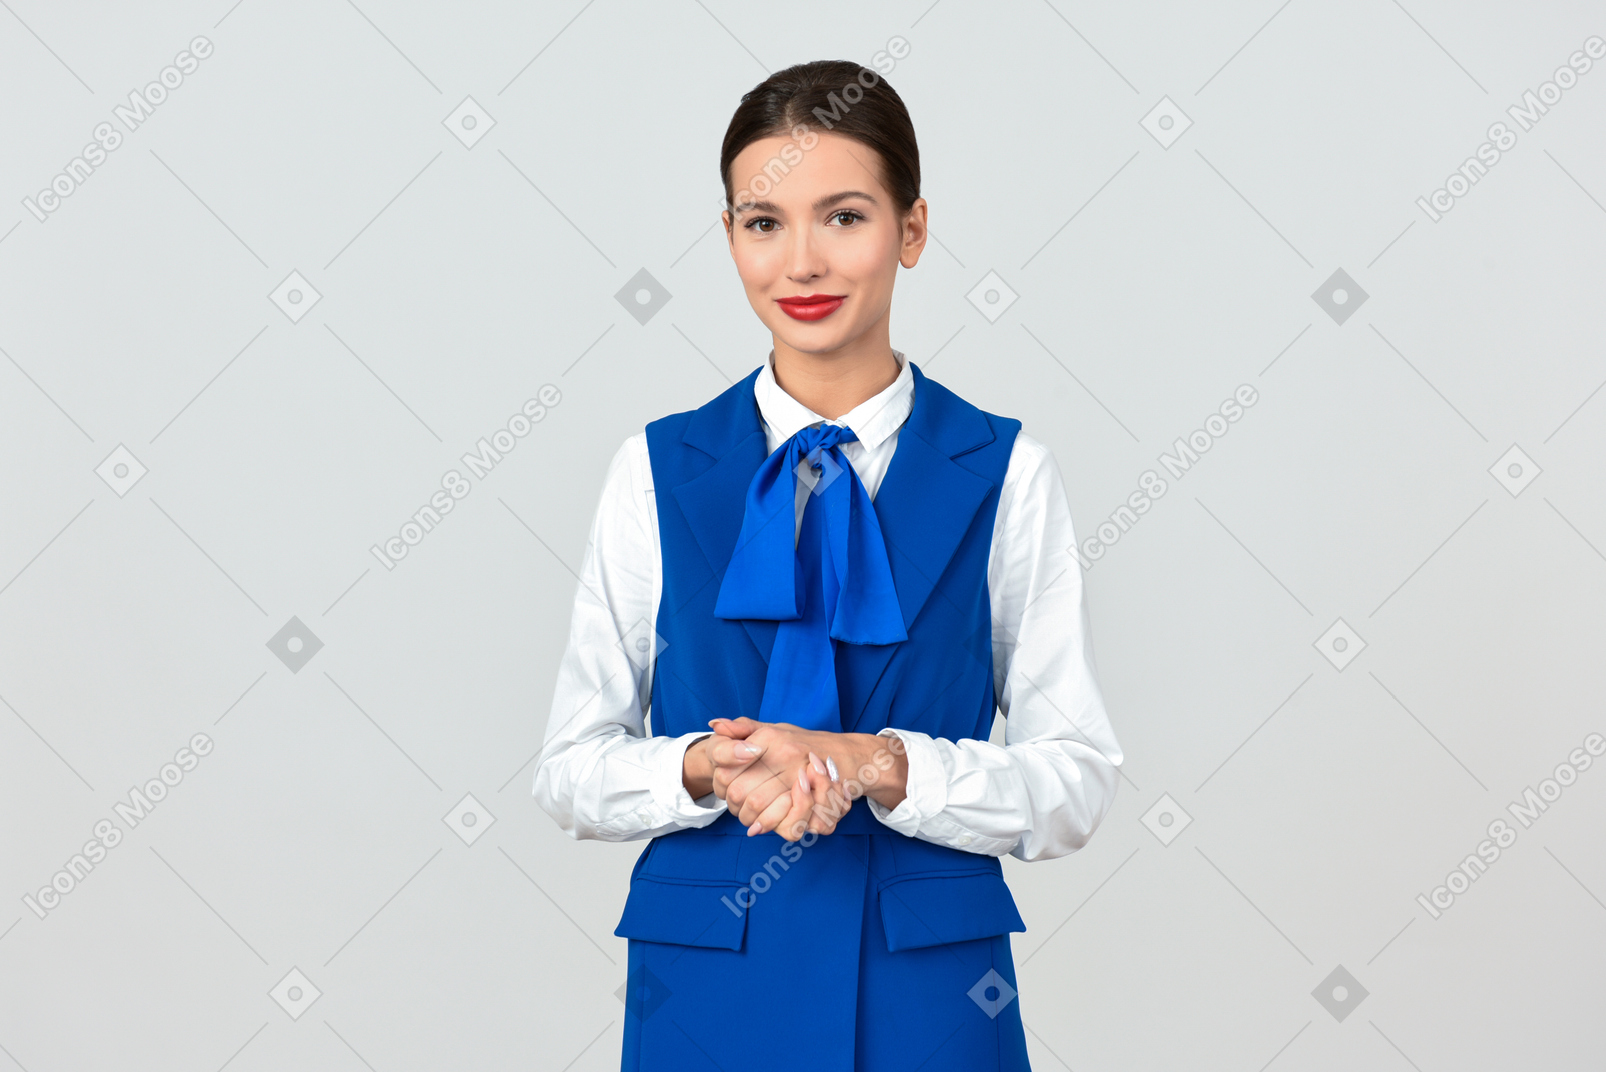 Bellissimo assistente di volo in uniforme blu